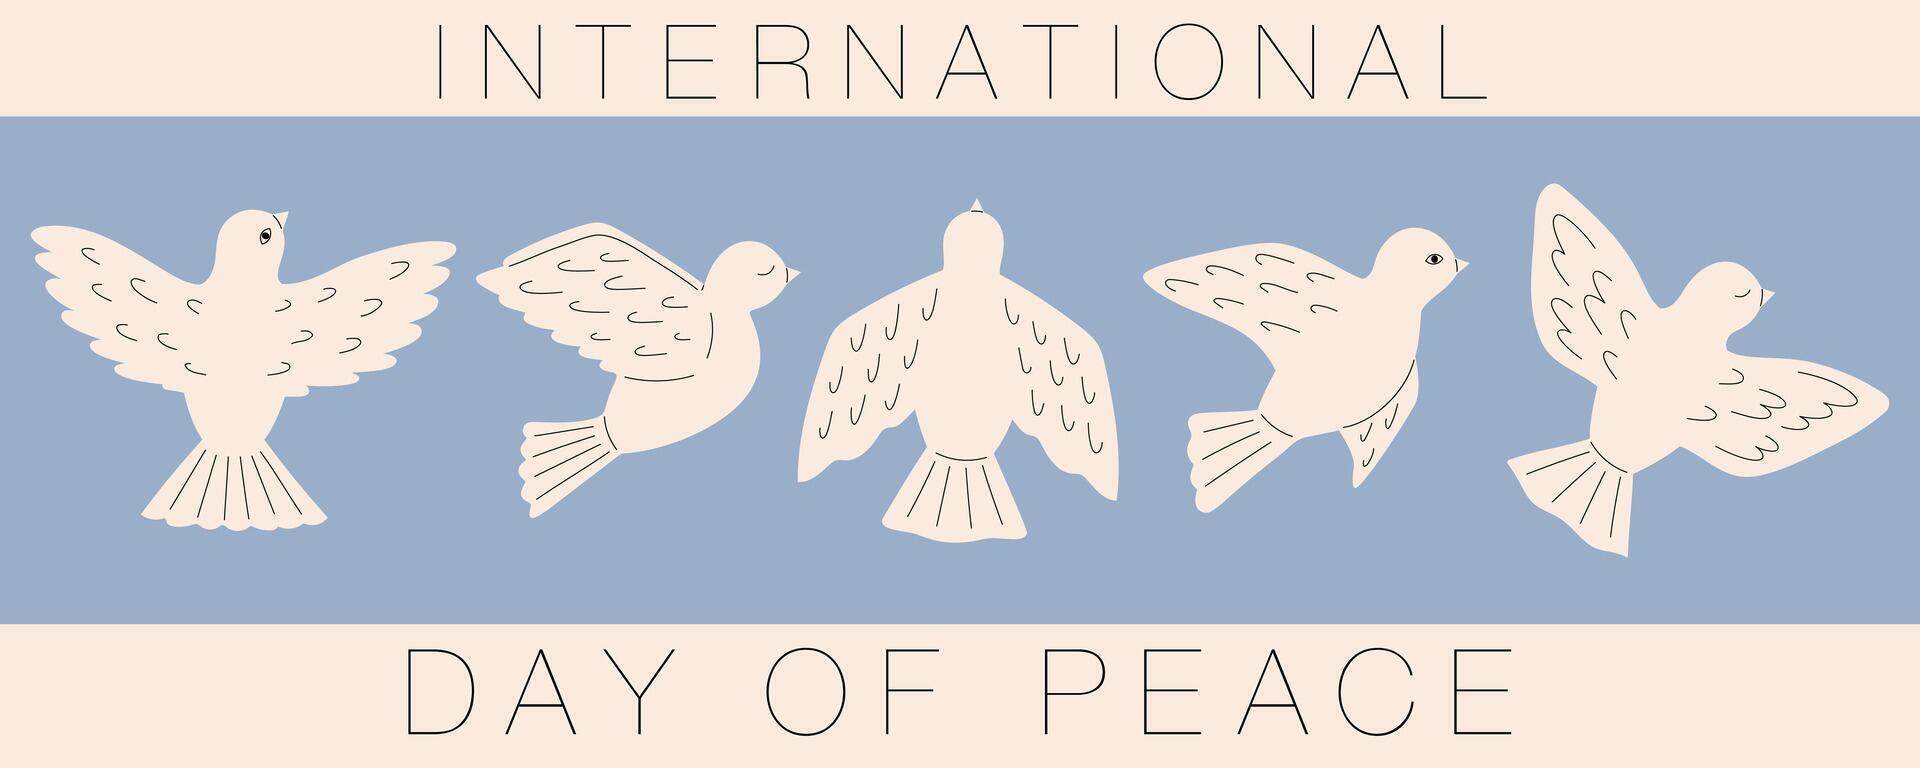 duva av fred. internationell dag av fred baner, kort, affisch, flygblad. fred och kärlek, frihet, Nej krig begrepp. pacifism symboler. vektor illustration i platt hand dragen stil